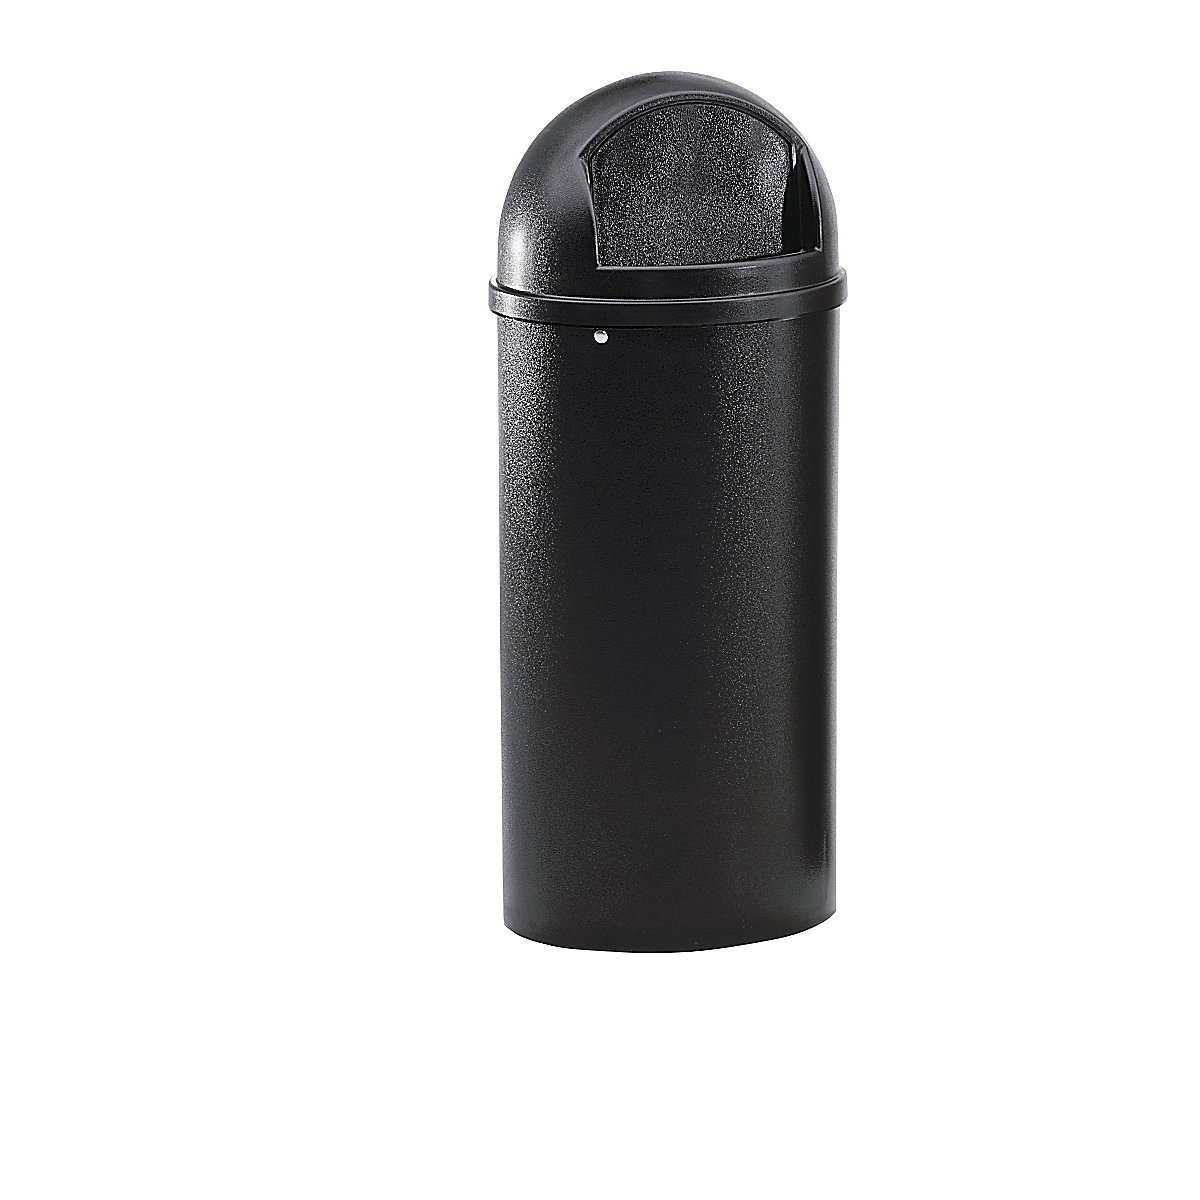 Rubbermaid Abfallbehälter (PE), feuerhemmend, Volumen 80 l, HxØ 1070 x 455 mm, schwarz